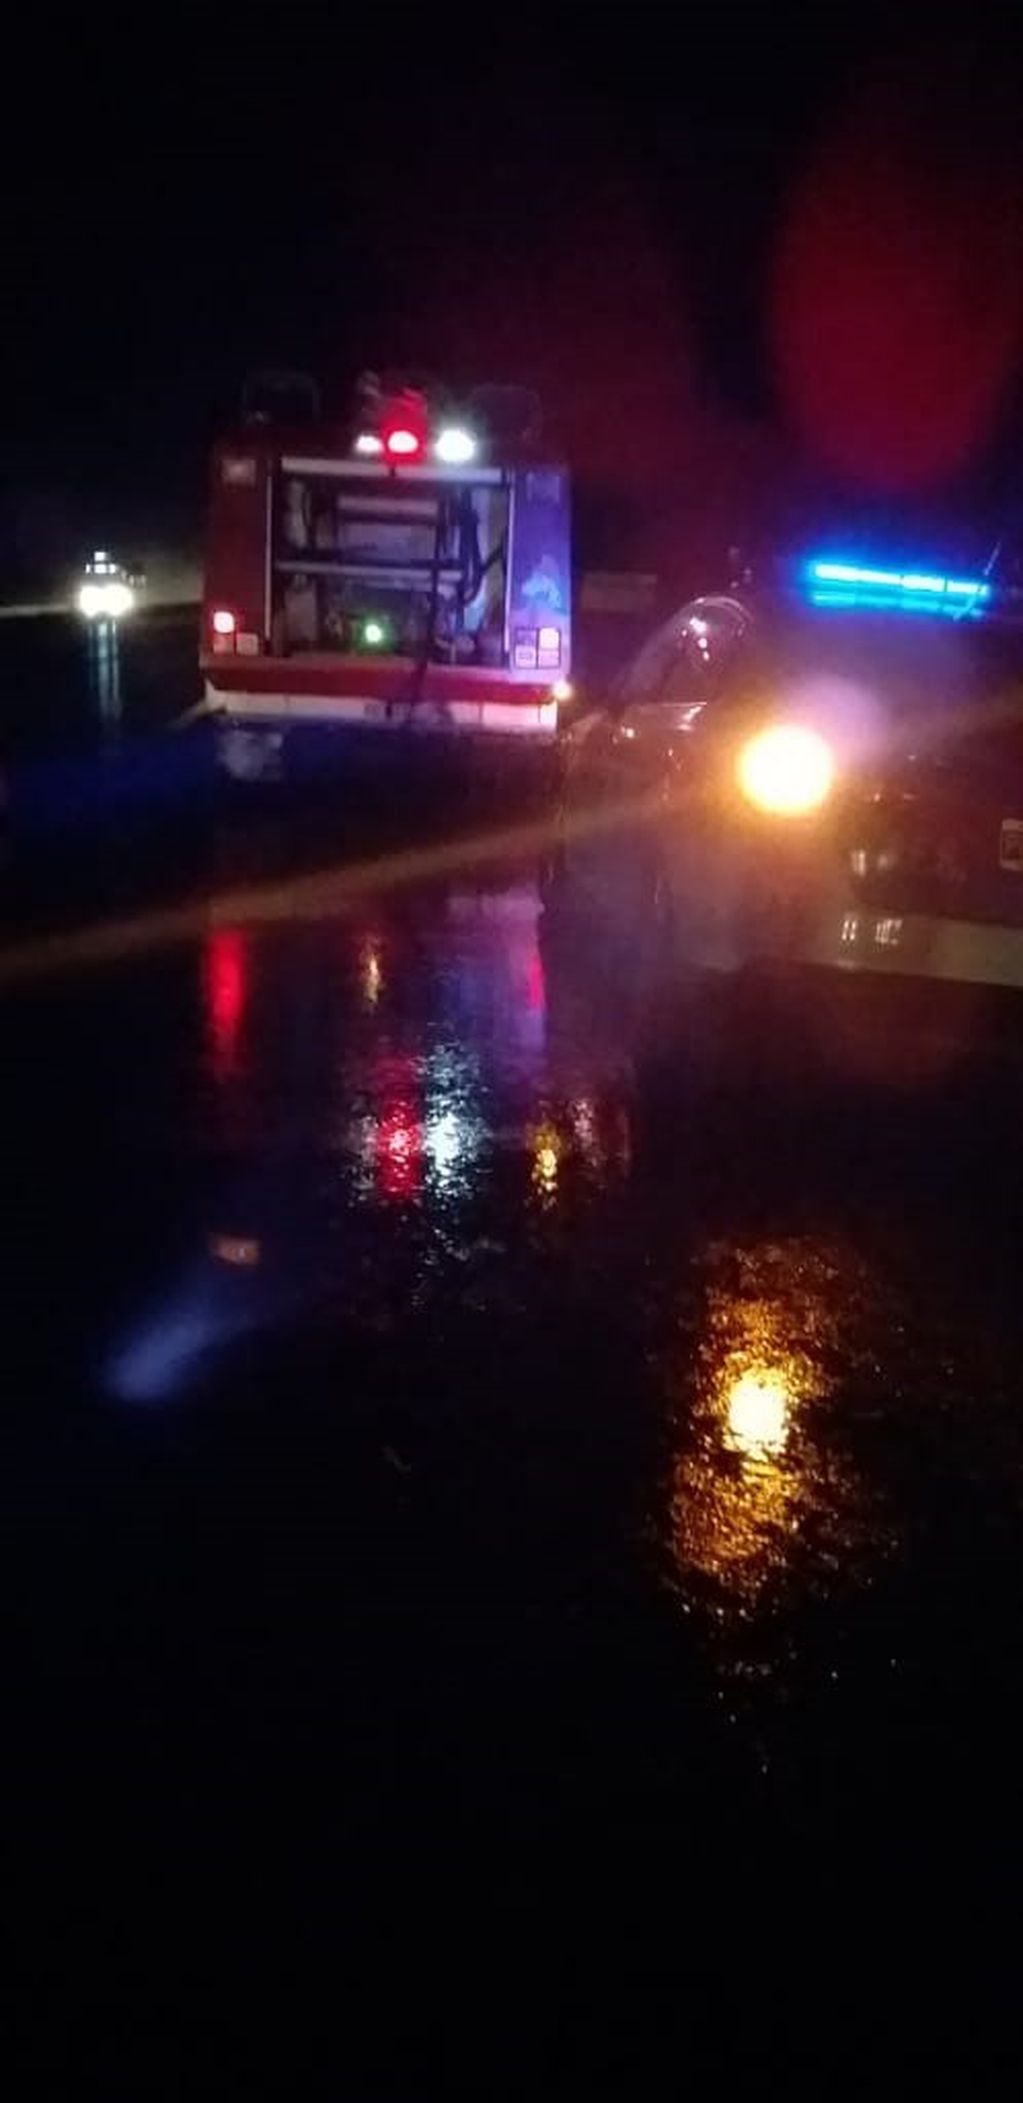 Incendio Ruta 12- Muere una anciana calcinada
Crédito: Bomberos Ceibas